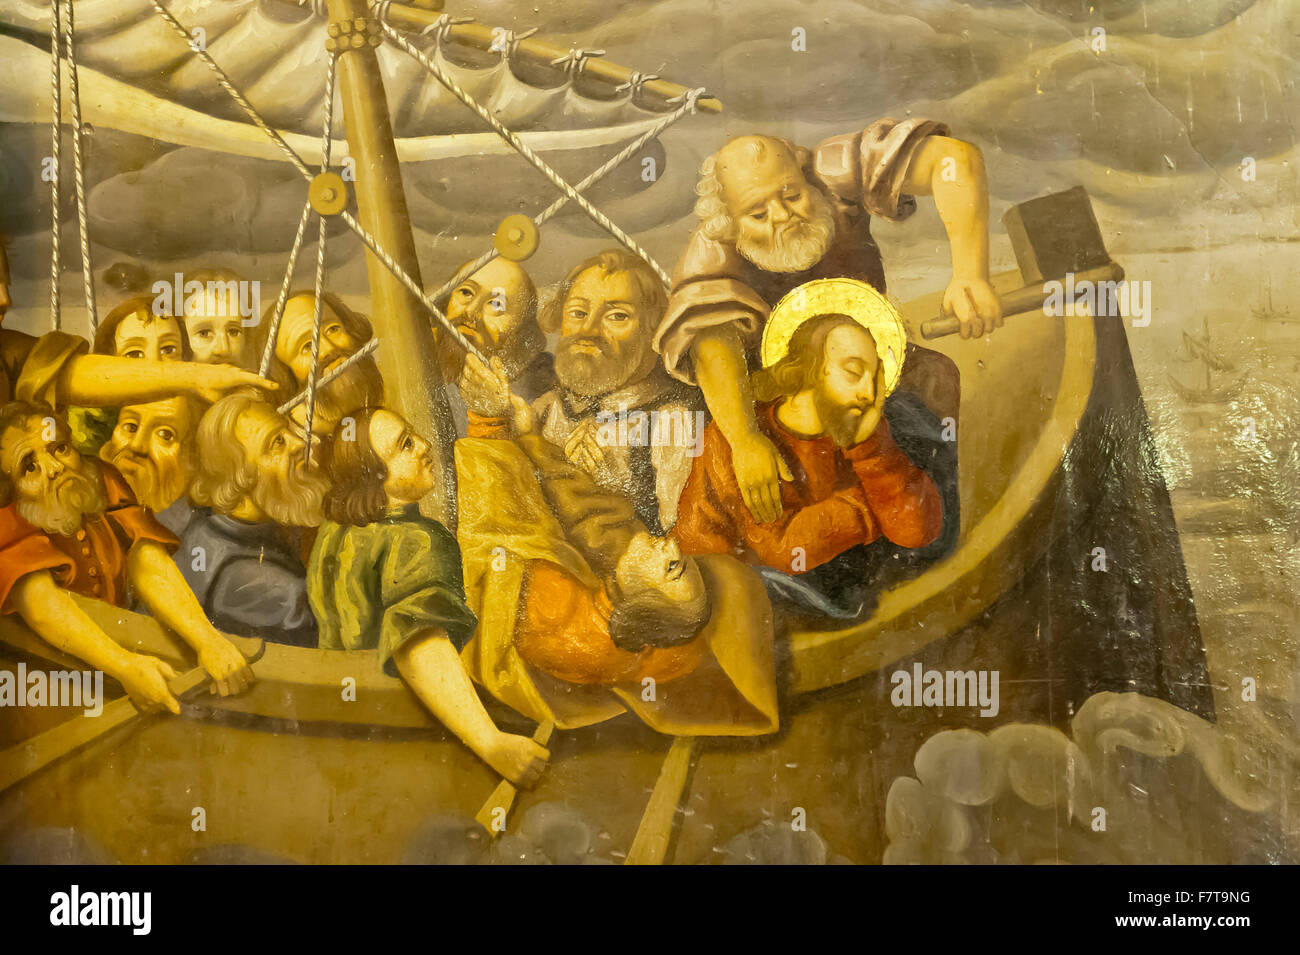 Eglise apostolique arménienne, murale, tempête, Jésus avec ses disciples dans le bateau pendant une tempête, Bethléem Église ou église Bedkhem Banque D'Images